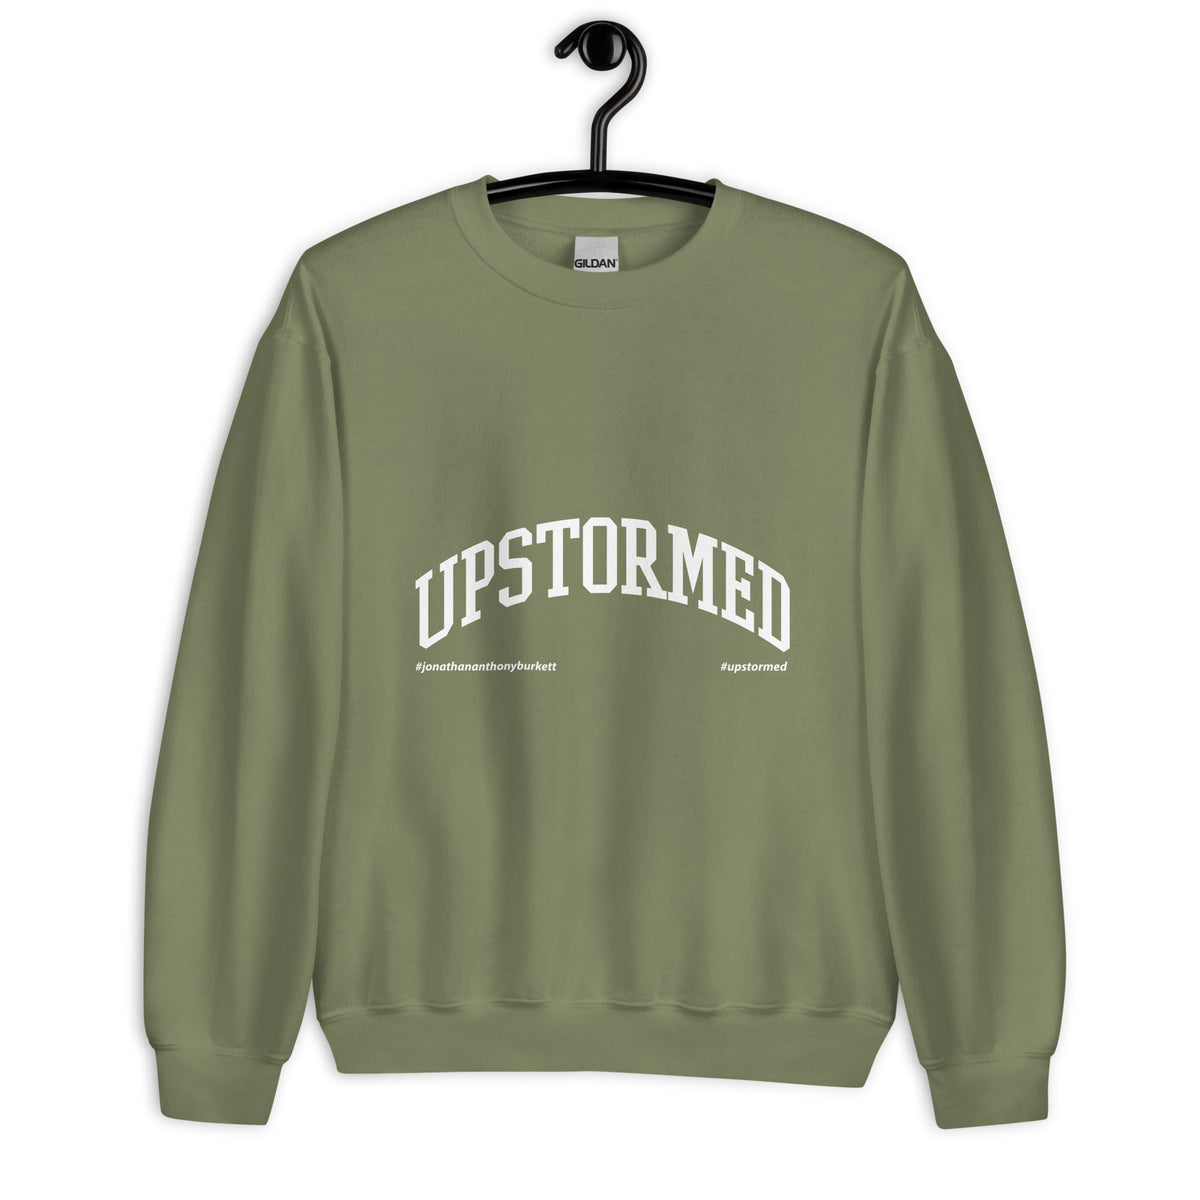 Upstormed Sweatshirt